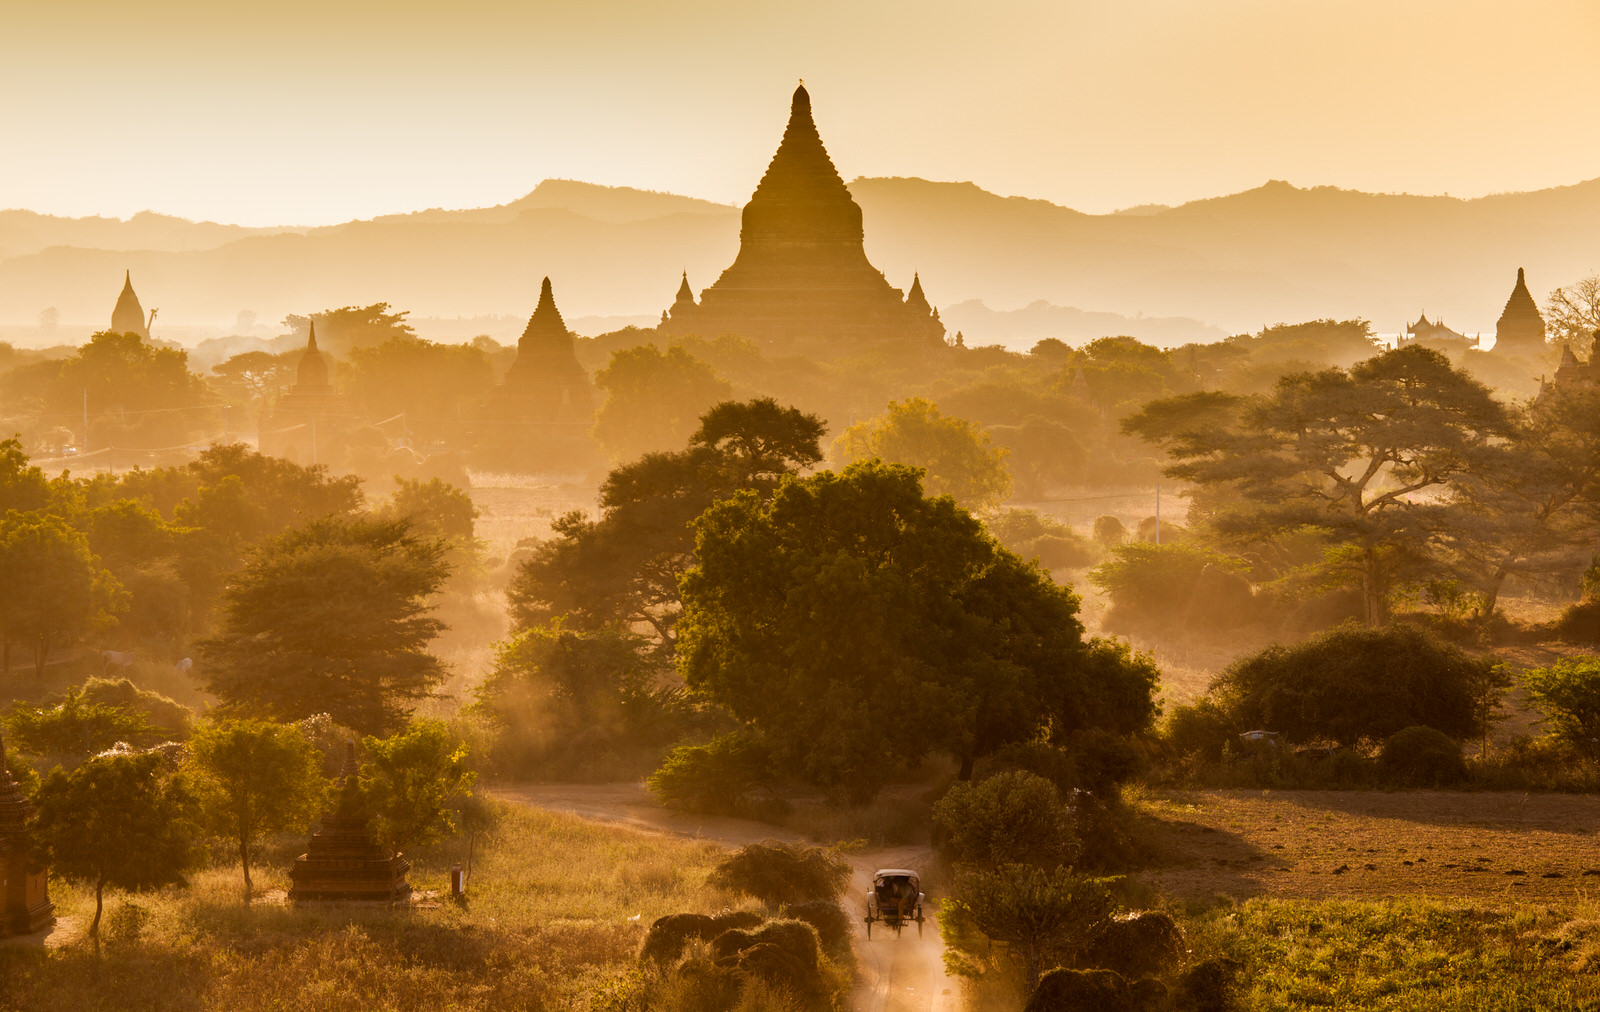 The Temples of bagan at sunrise, Bagan(Pagan), Myanmar